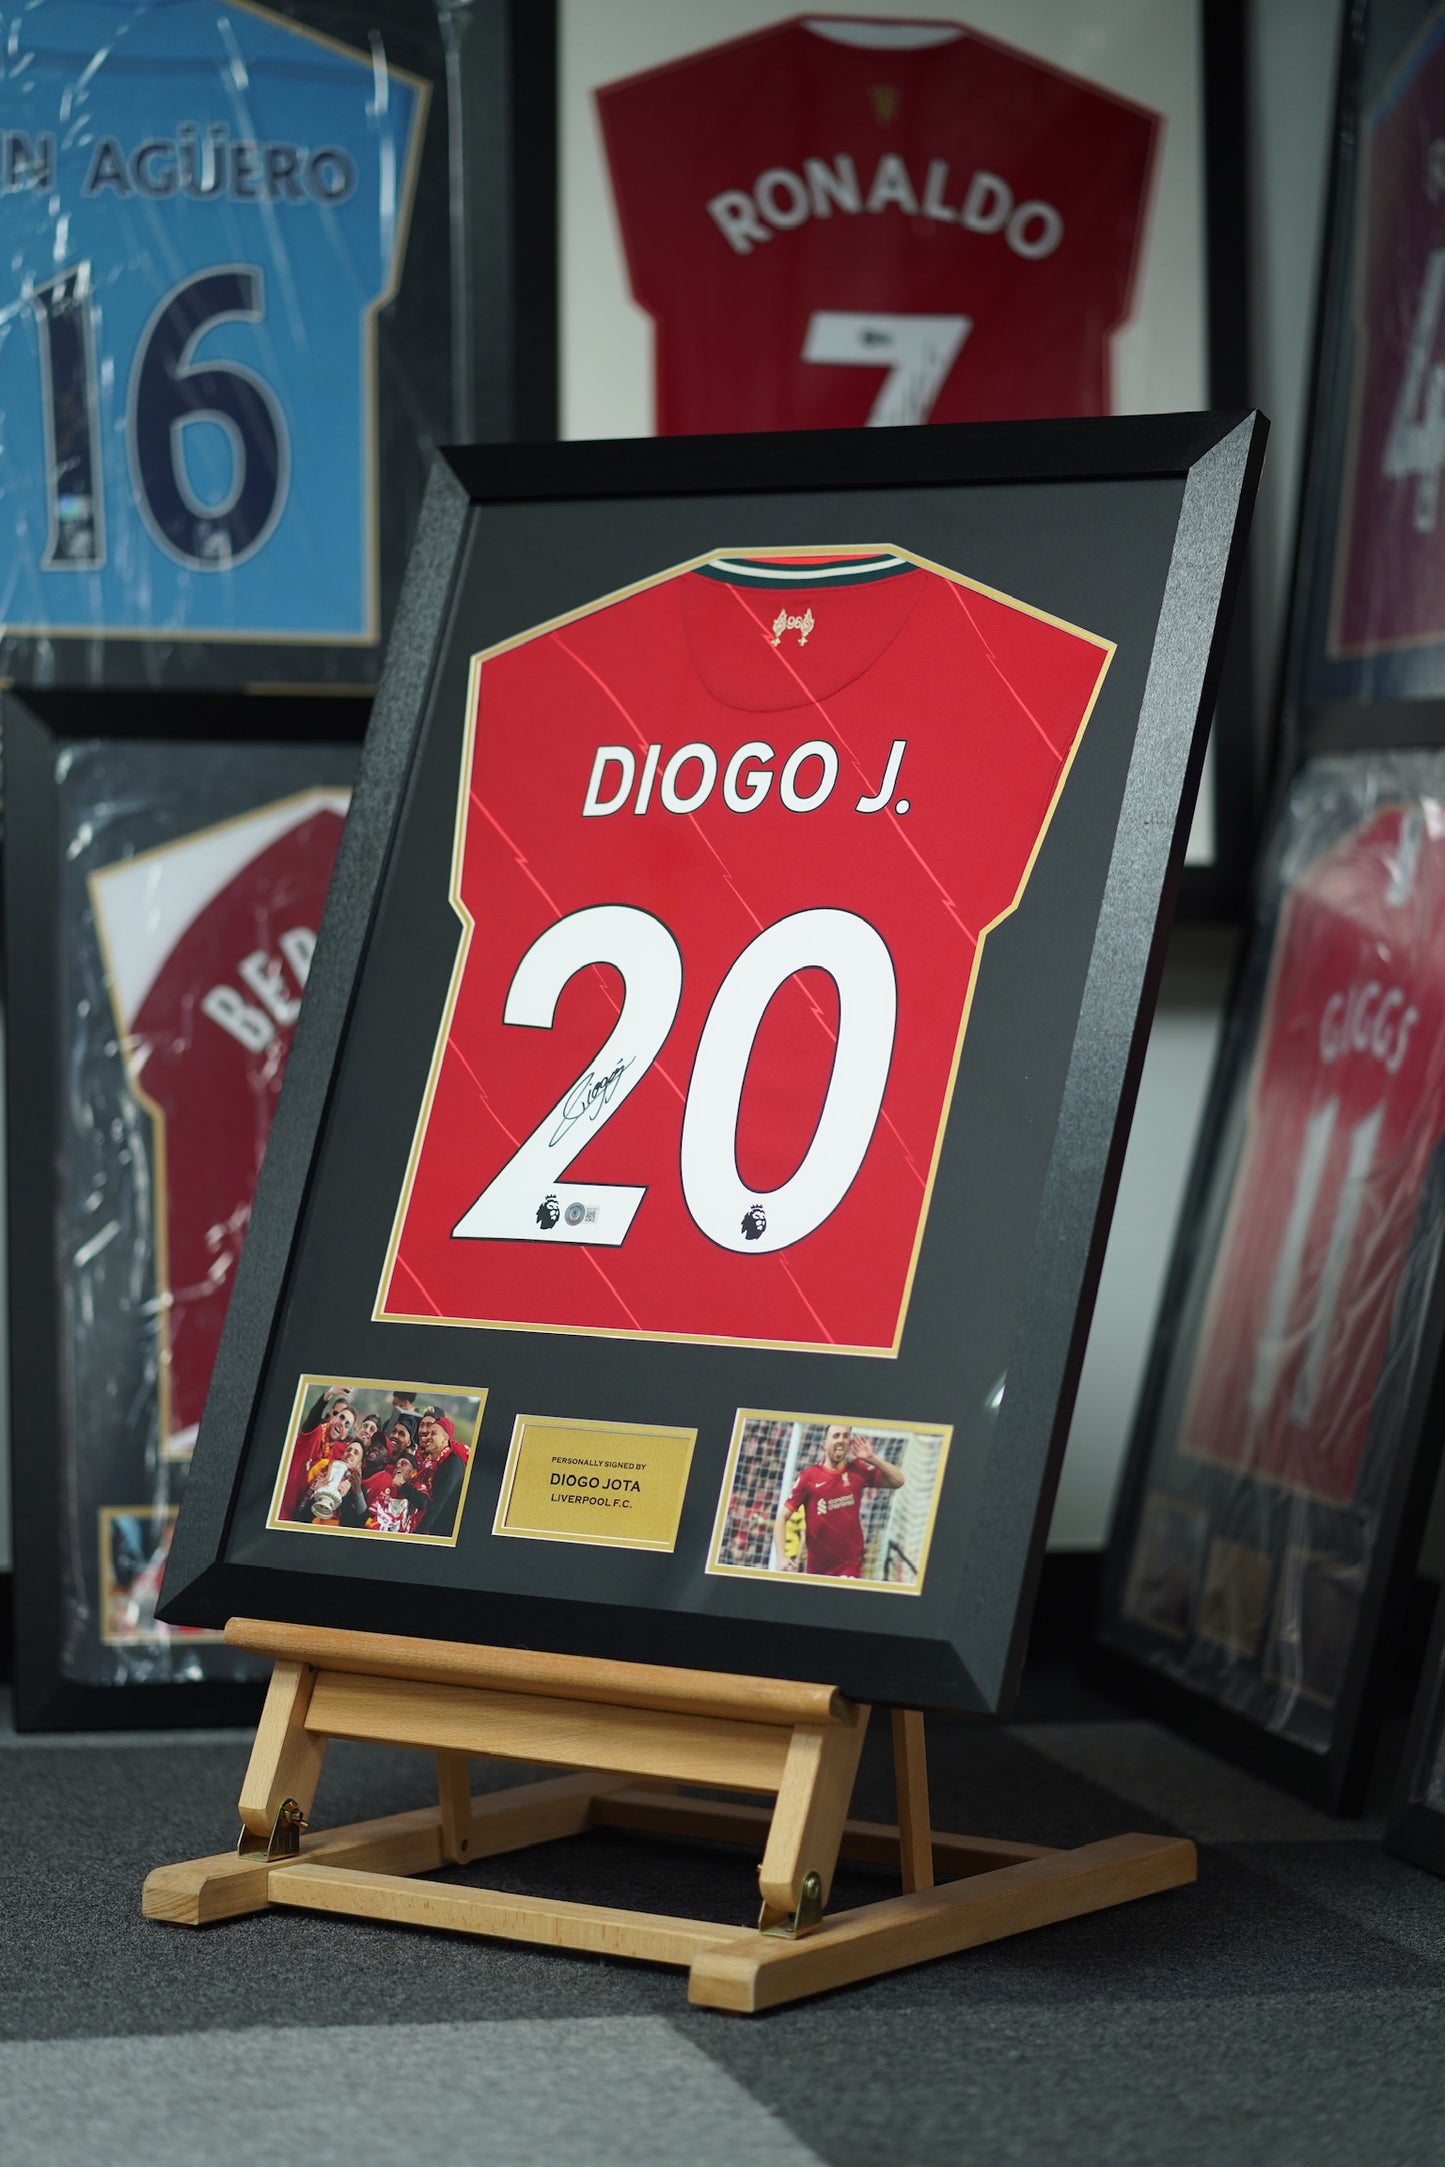 迪奧高·祖達 Diogo Jota 利物浦主場球衣裱框 (背簽)